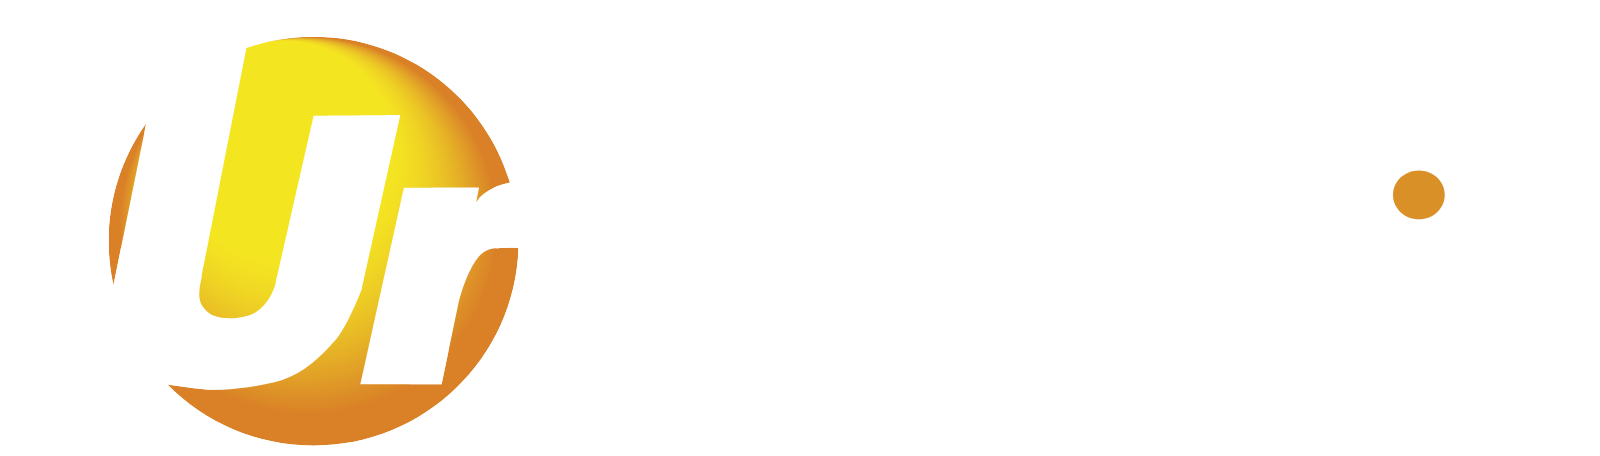 Ur Energy logo large for dark backgrounds (transparent PNG)